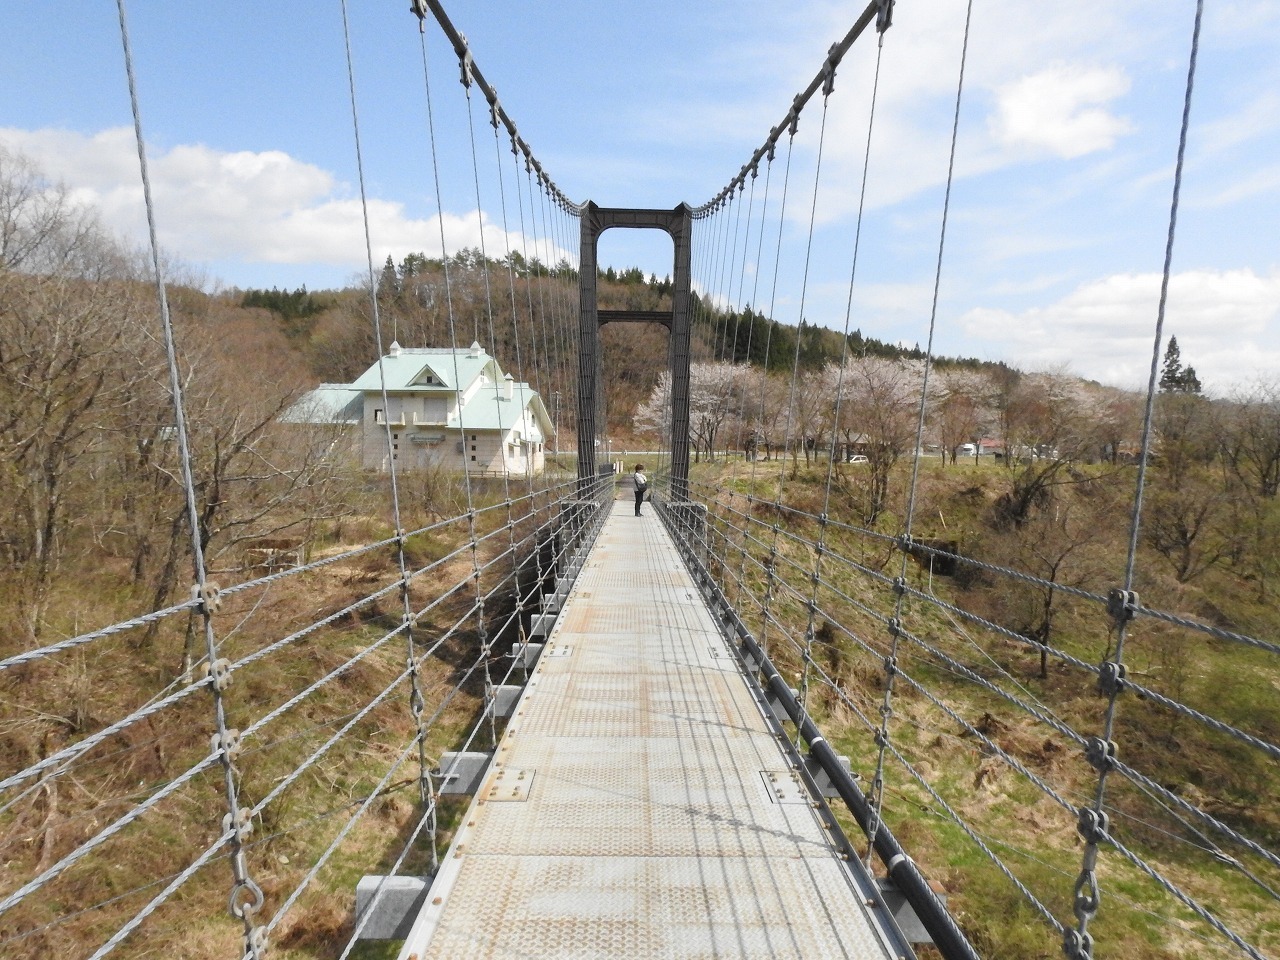 『五連水車風景と吊り橋風景』_d0054276_20085861.jpg